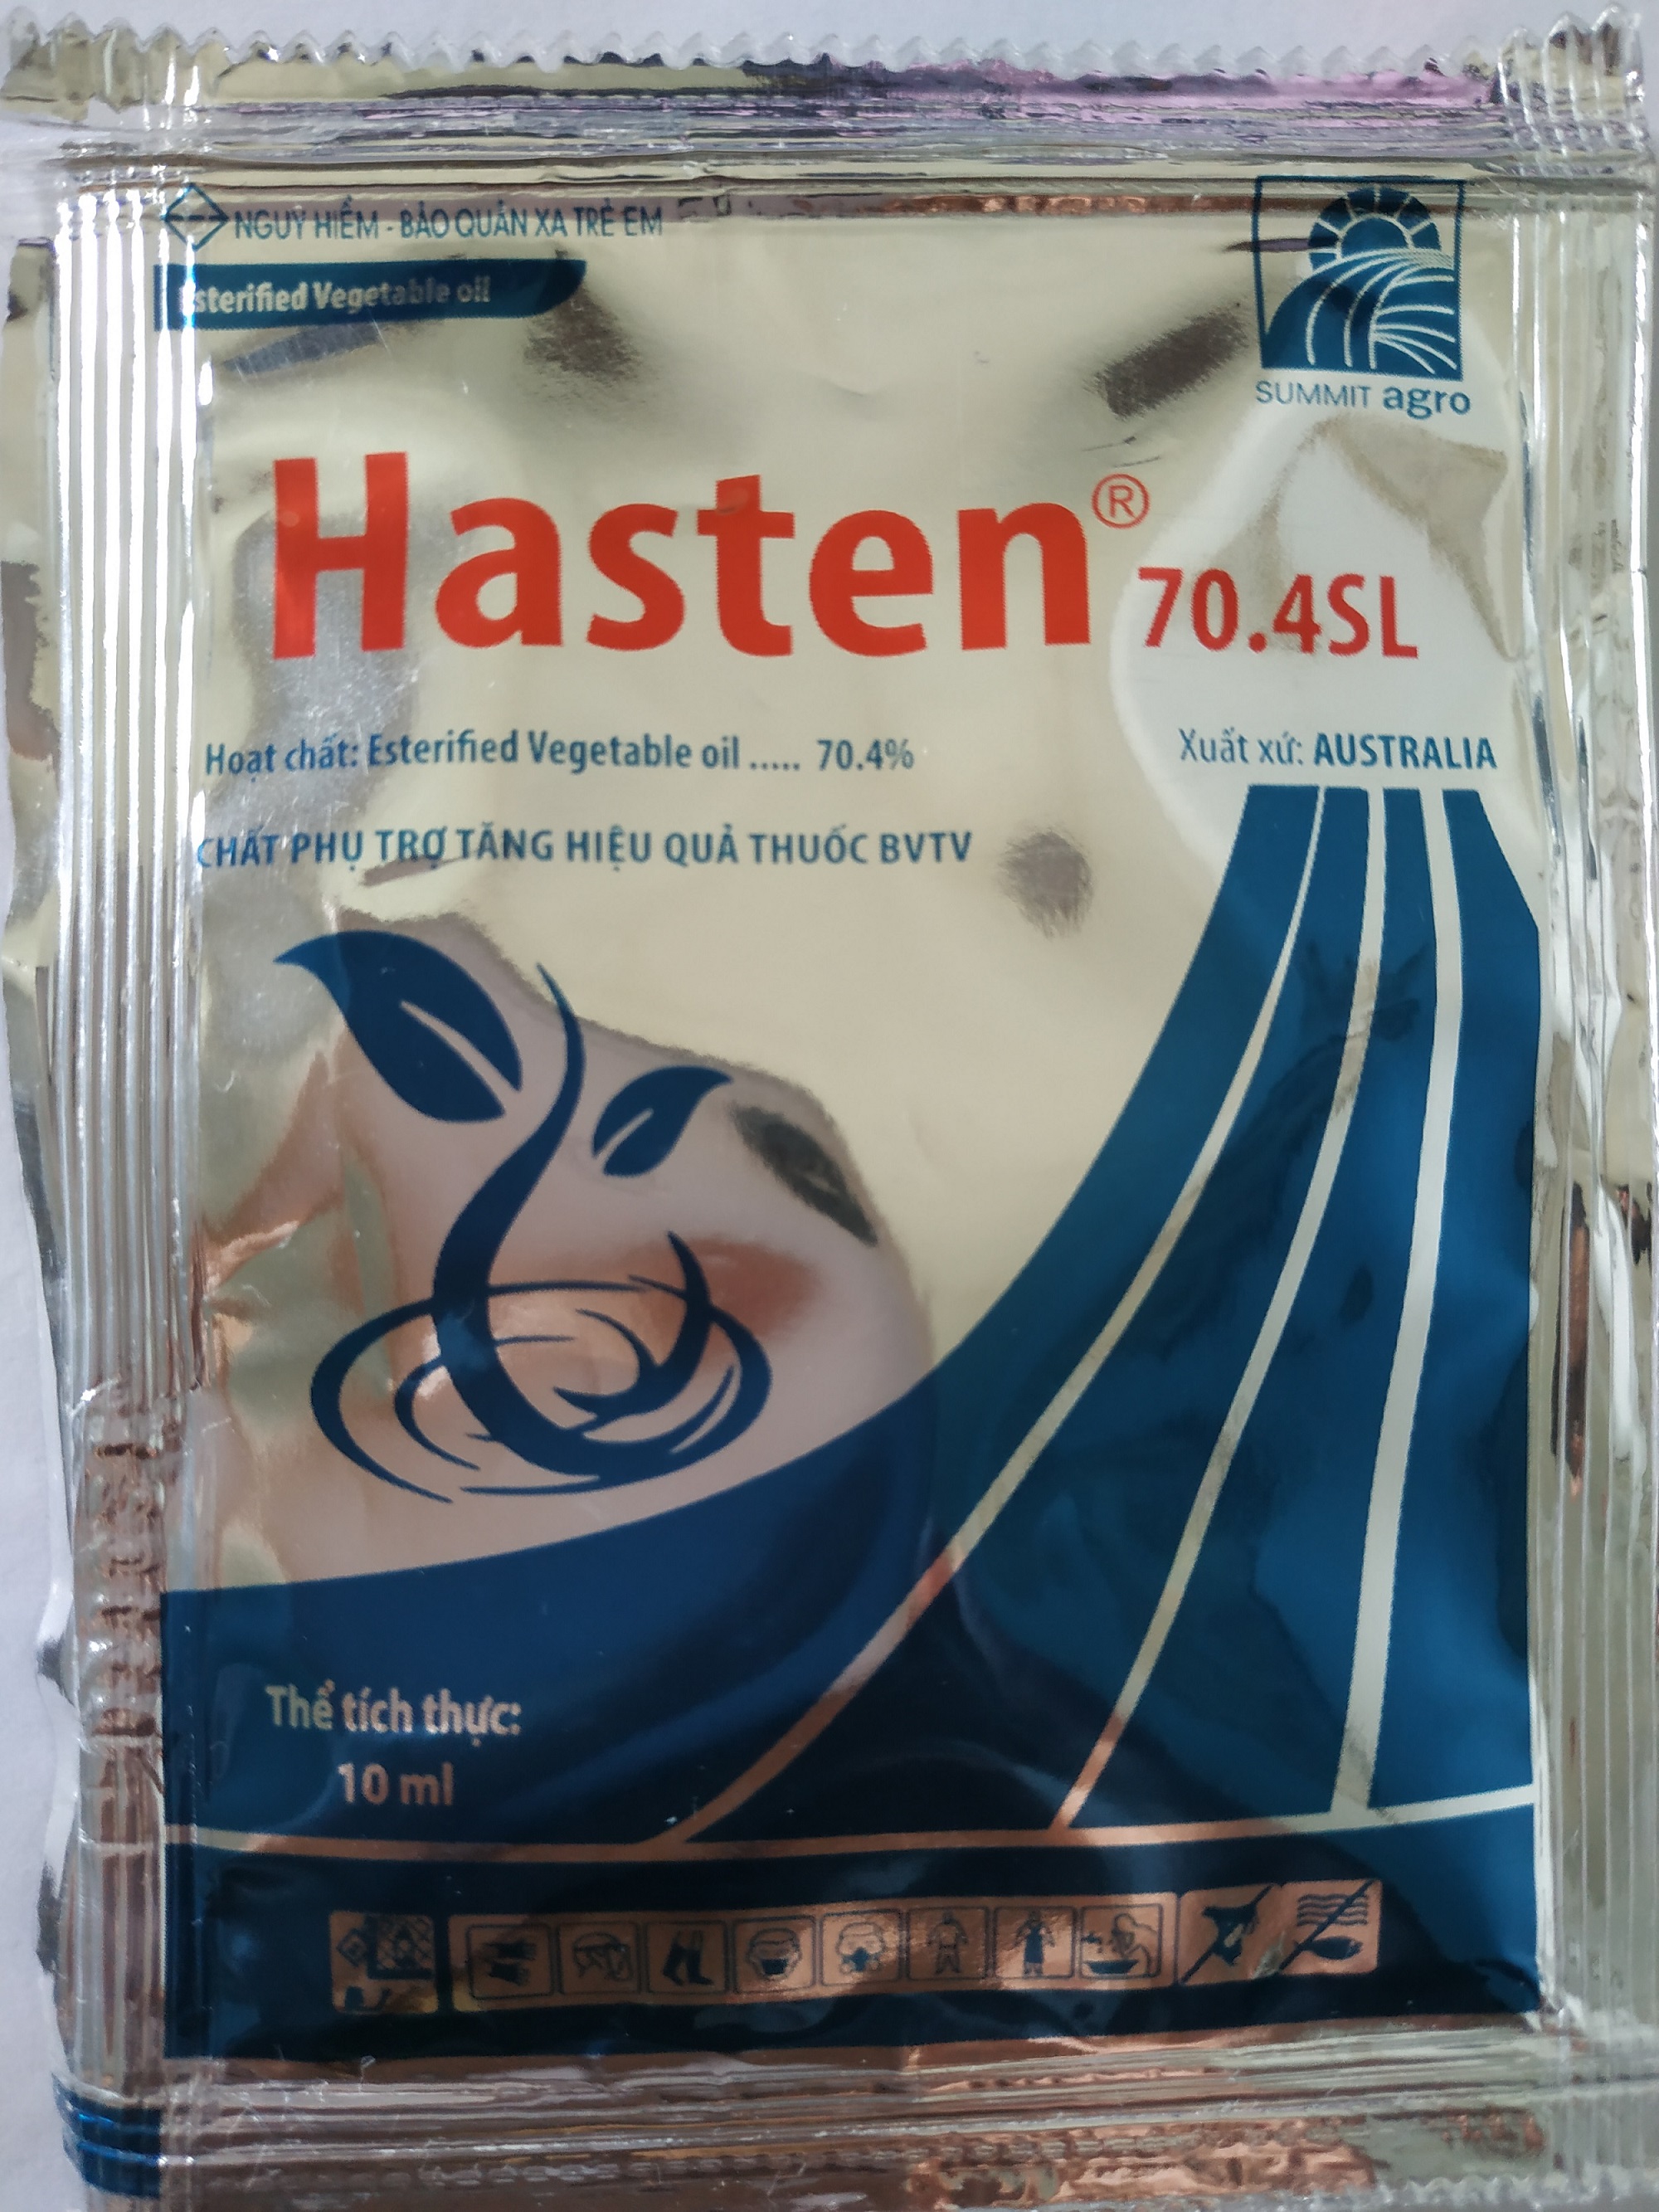 Chất bám dính Hasten 70.4SL xuất xứ  Australia - gói 10ml